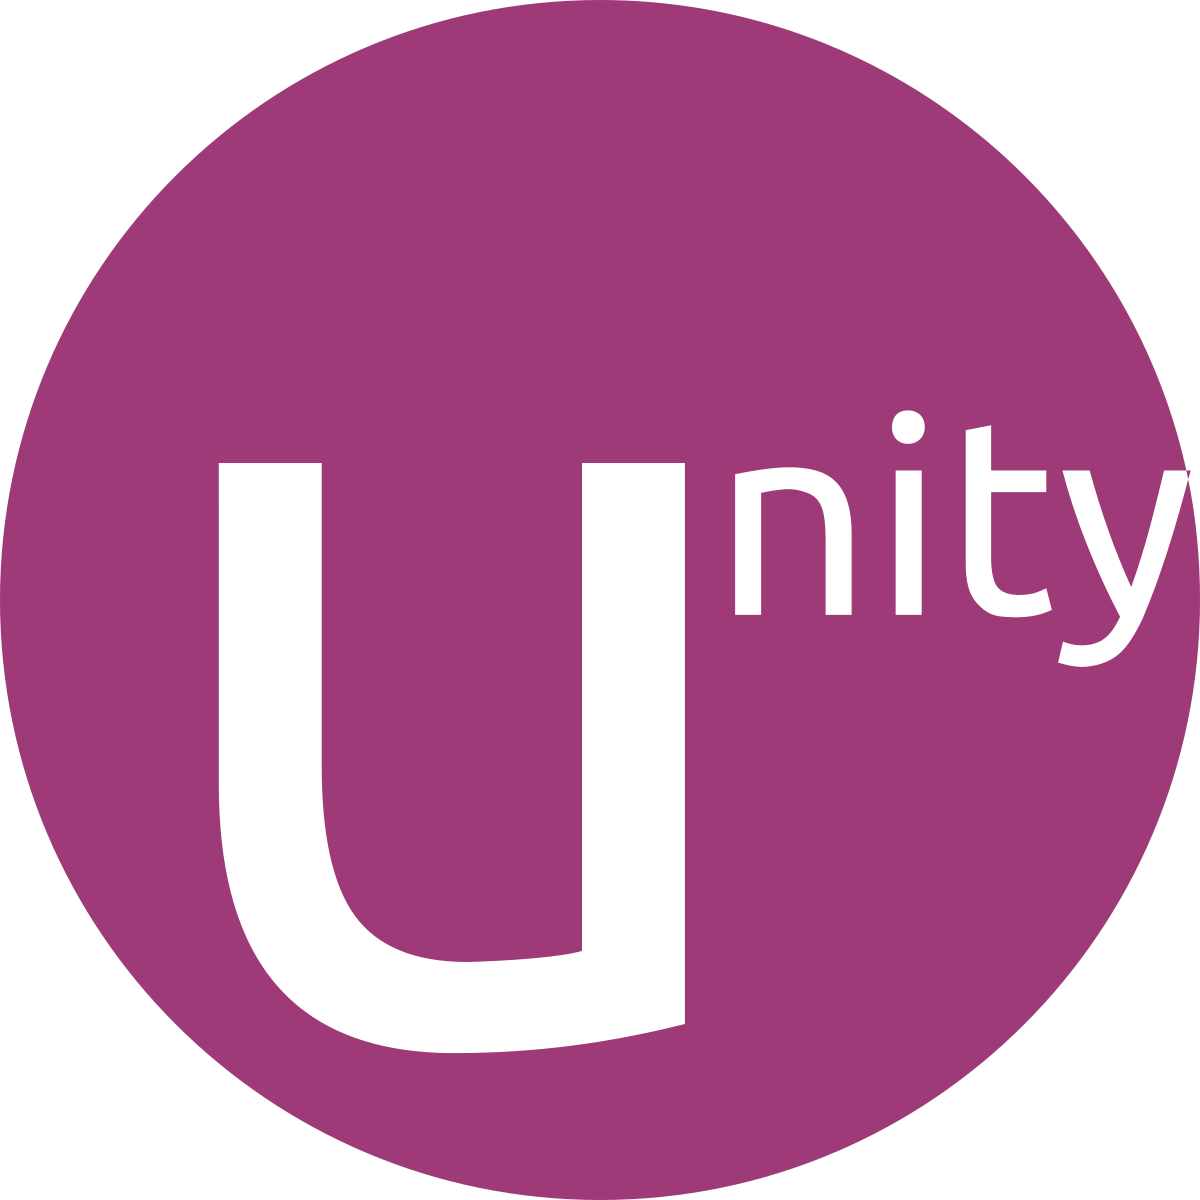 Old Ubuntu Logo - Unity (user interface)